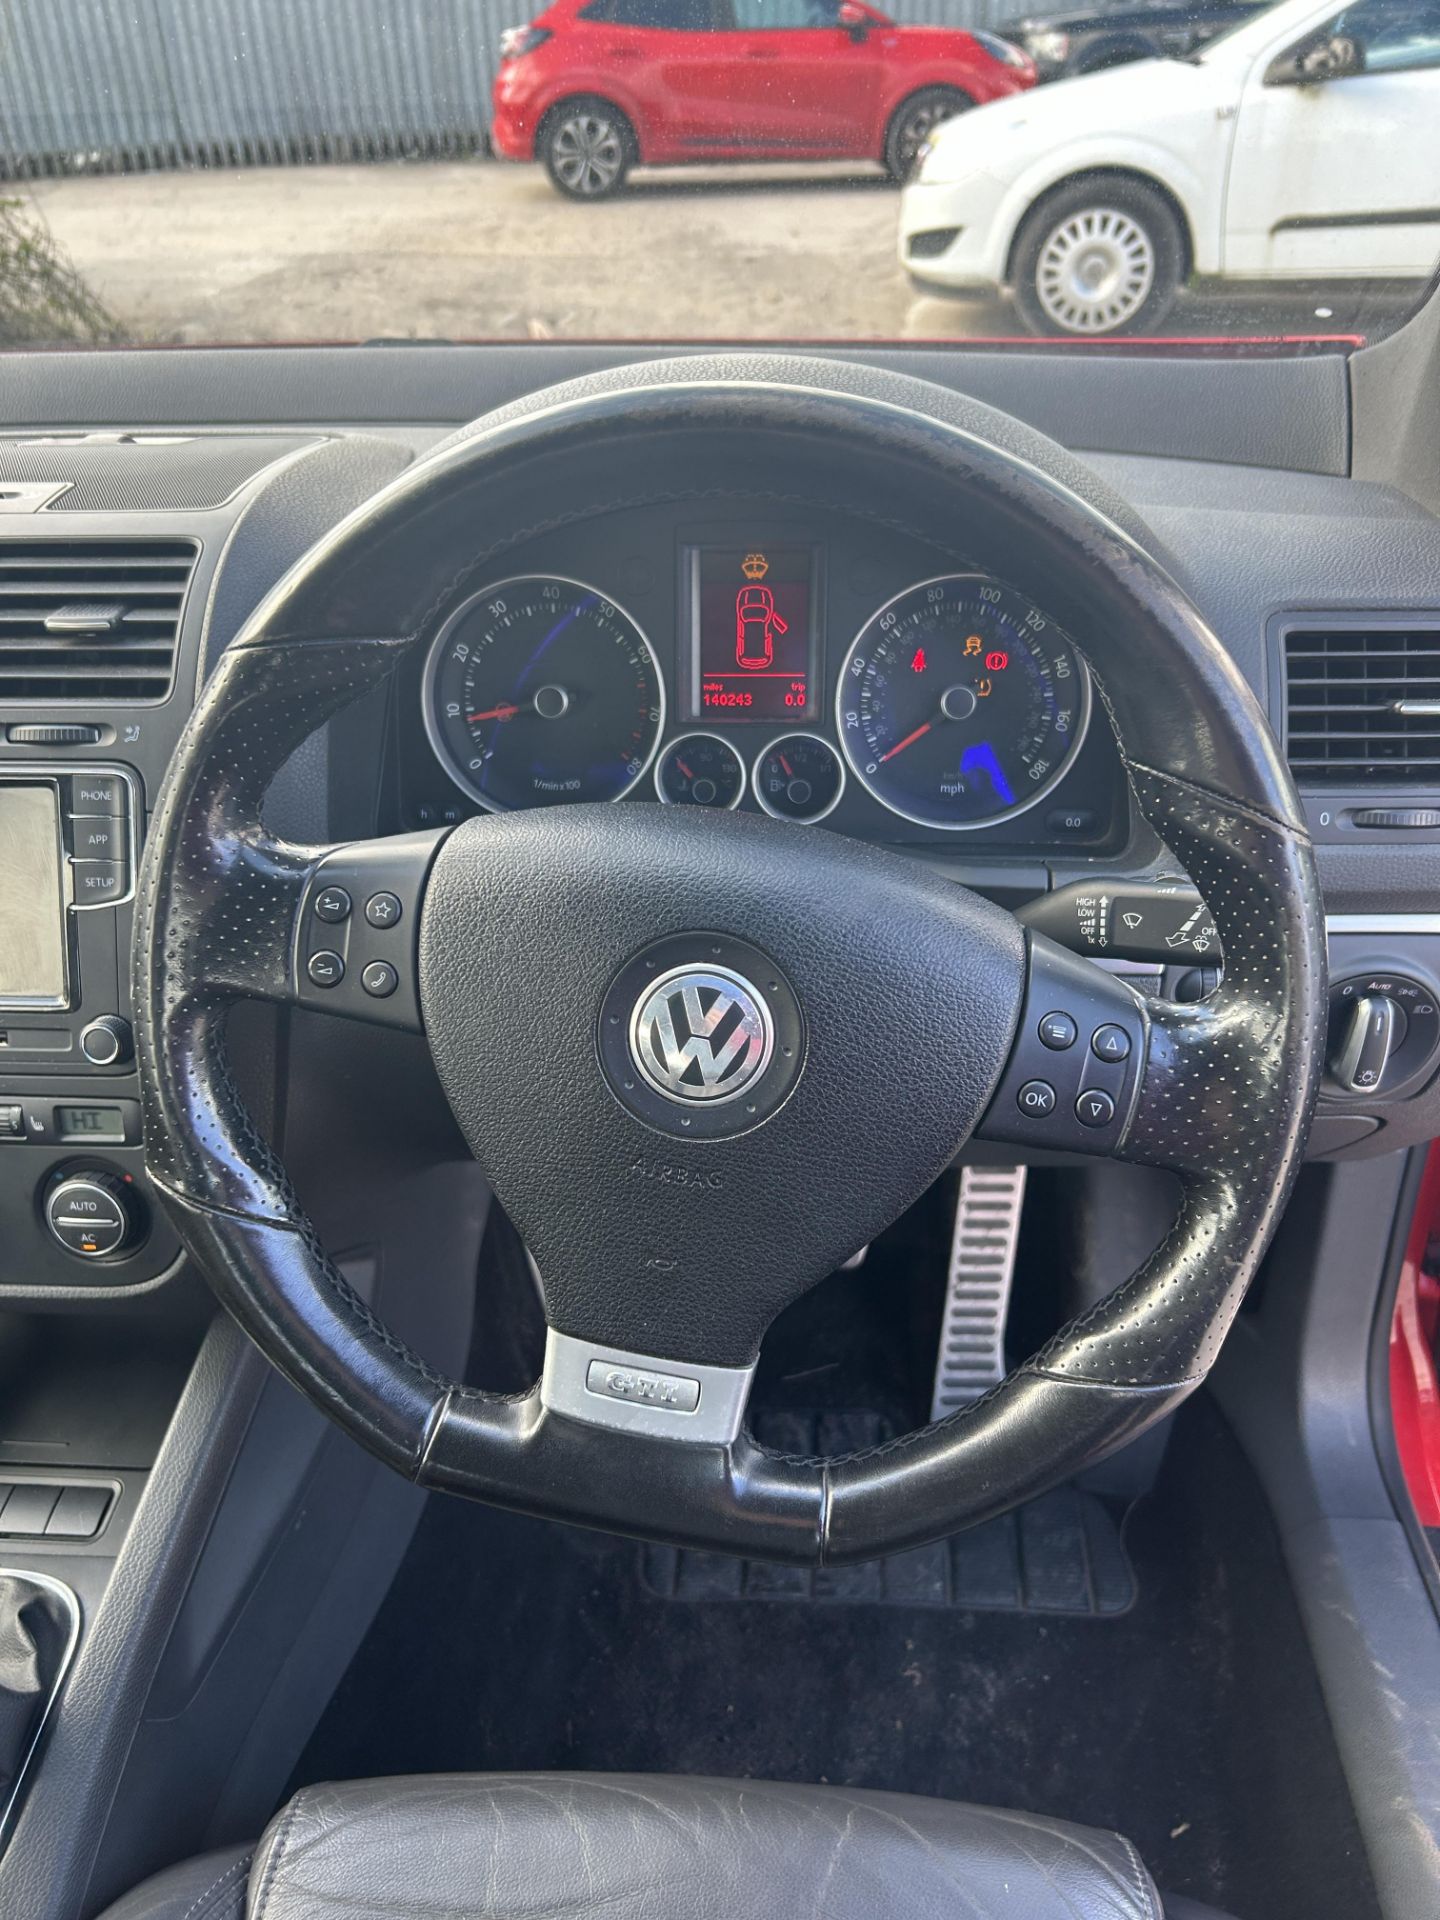 Volkswagen Golf GTI Petrol 5 Door Hatchback | LS08 DBU | 140,243 Miles - Image 12 of 13